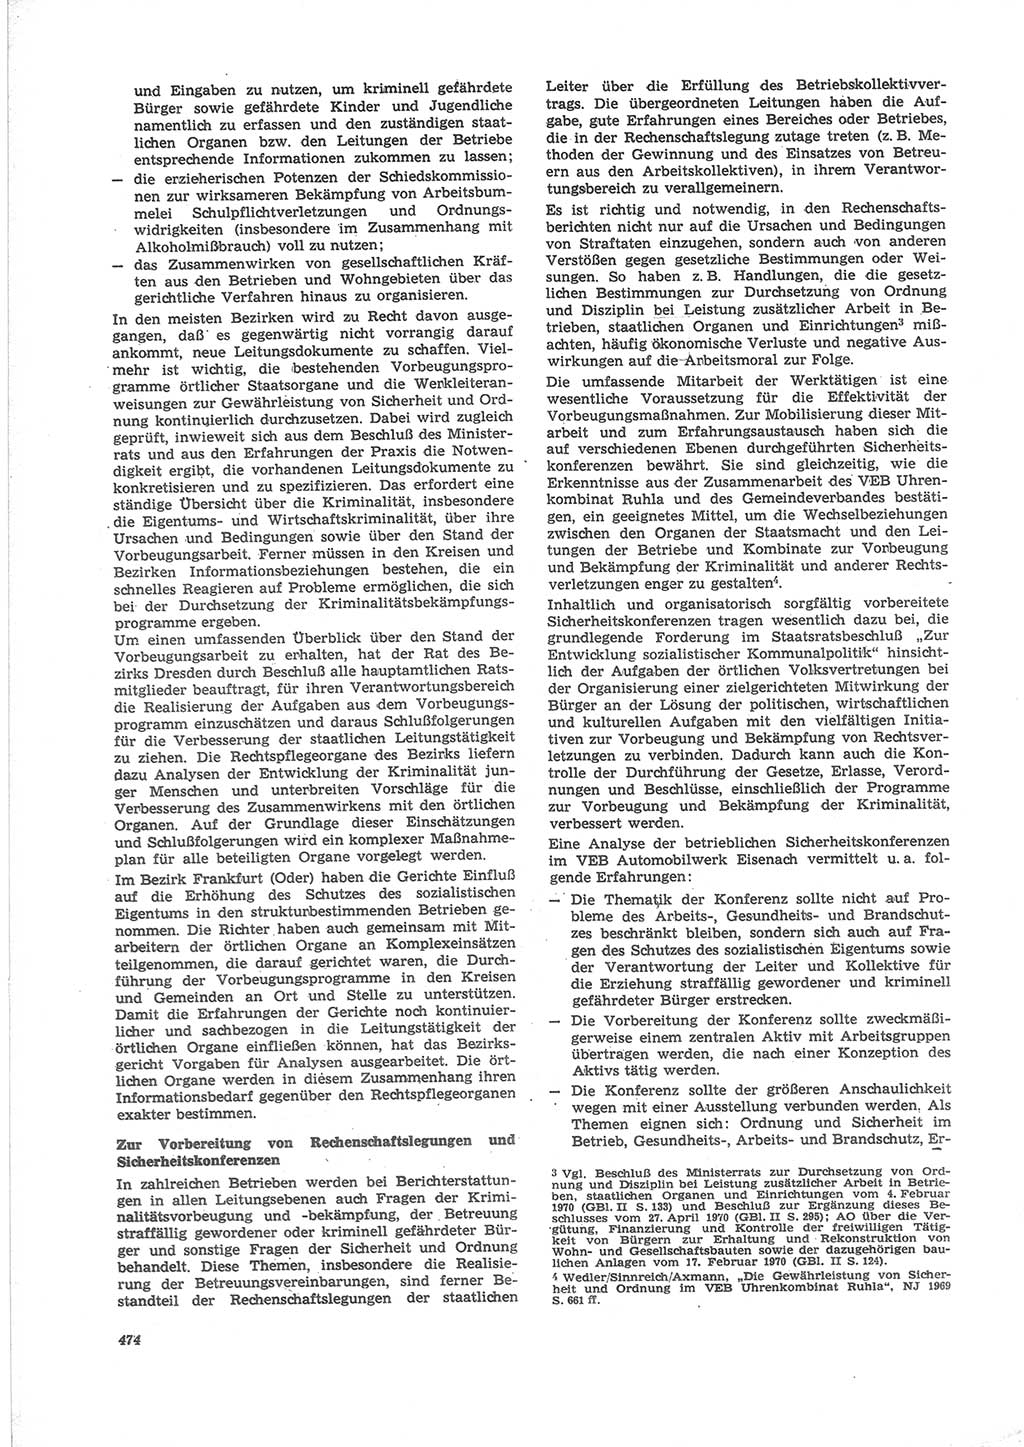 Neue Justiz (NJ), Zeitschrift für Recht und Rechtswissenschaft [Deutsche Demokratische Republik (DDR)], 24. Jahrgang 1970, Seite 474 (NJ DDR 1970, S. 474)